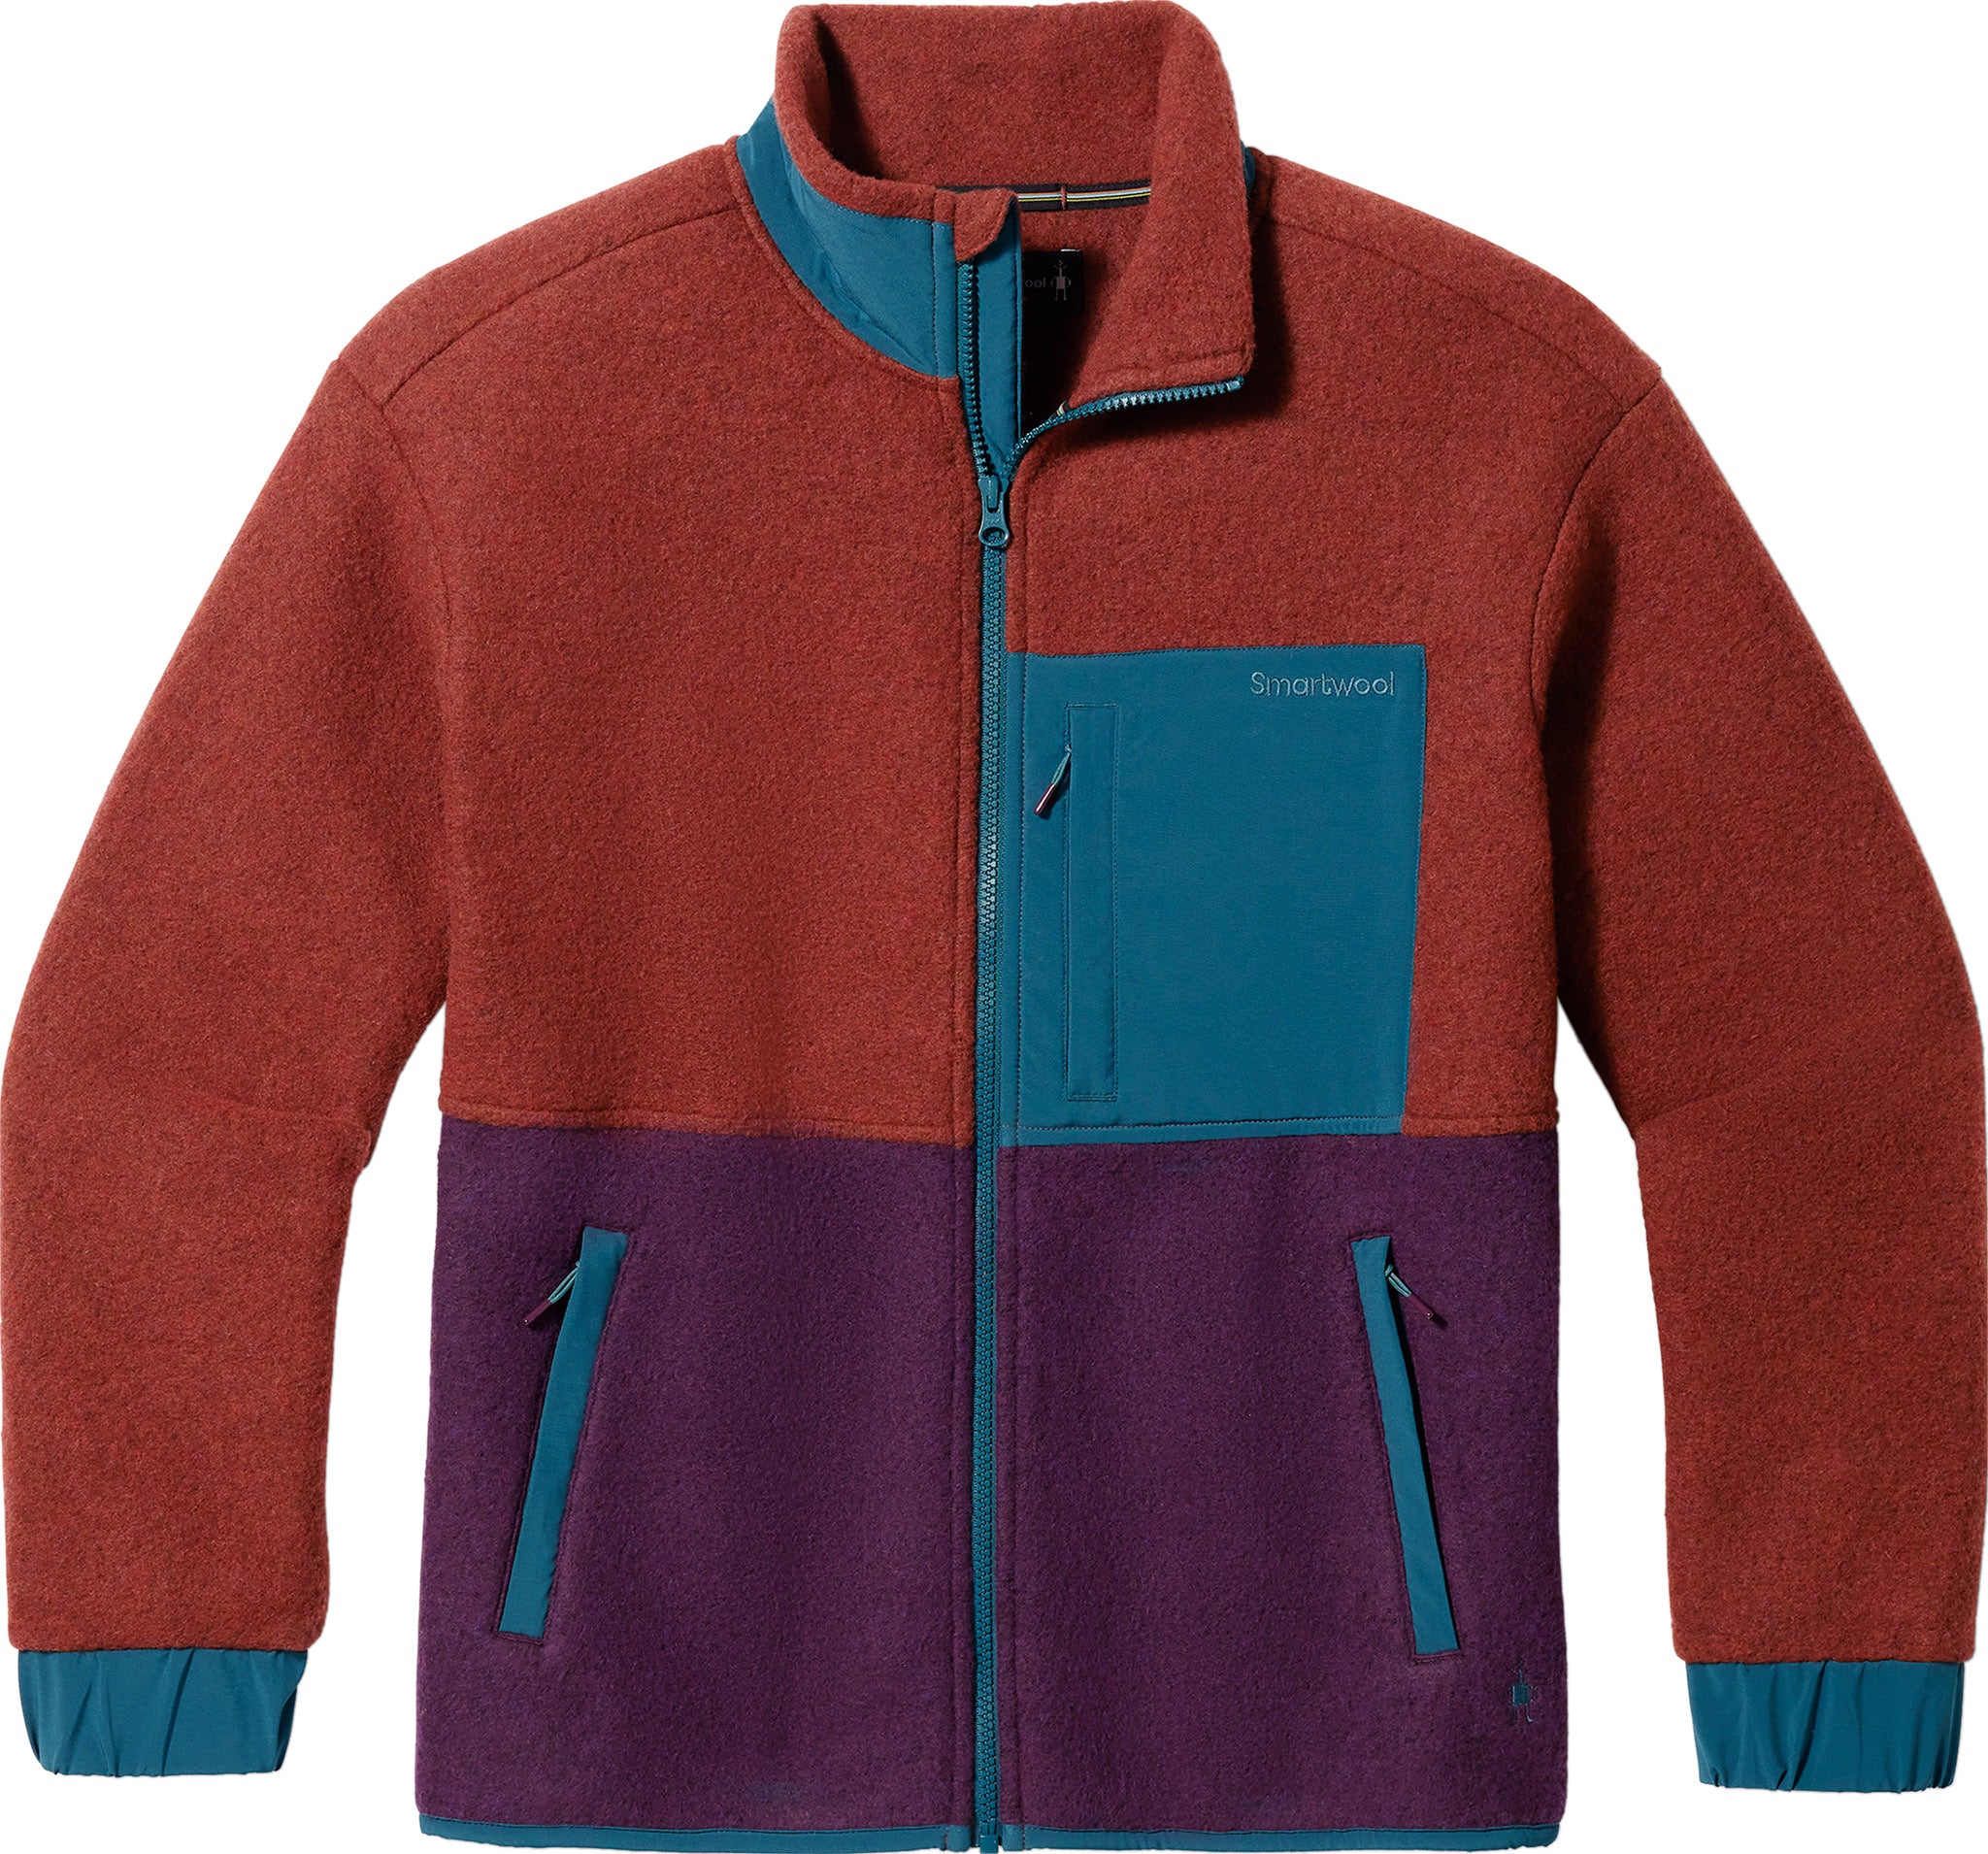 Smartwool Hudson Trail Fleece Jacket - Women's - Clothing